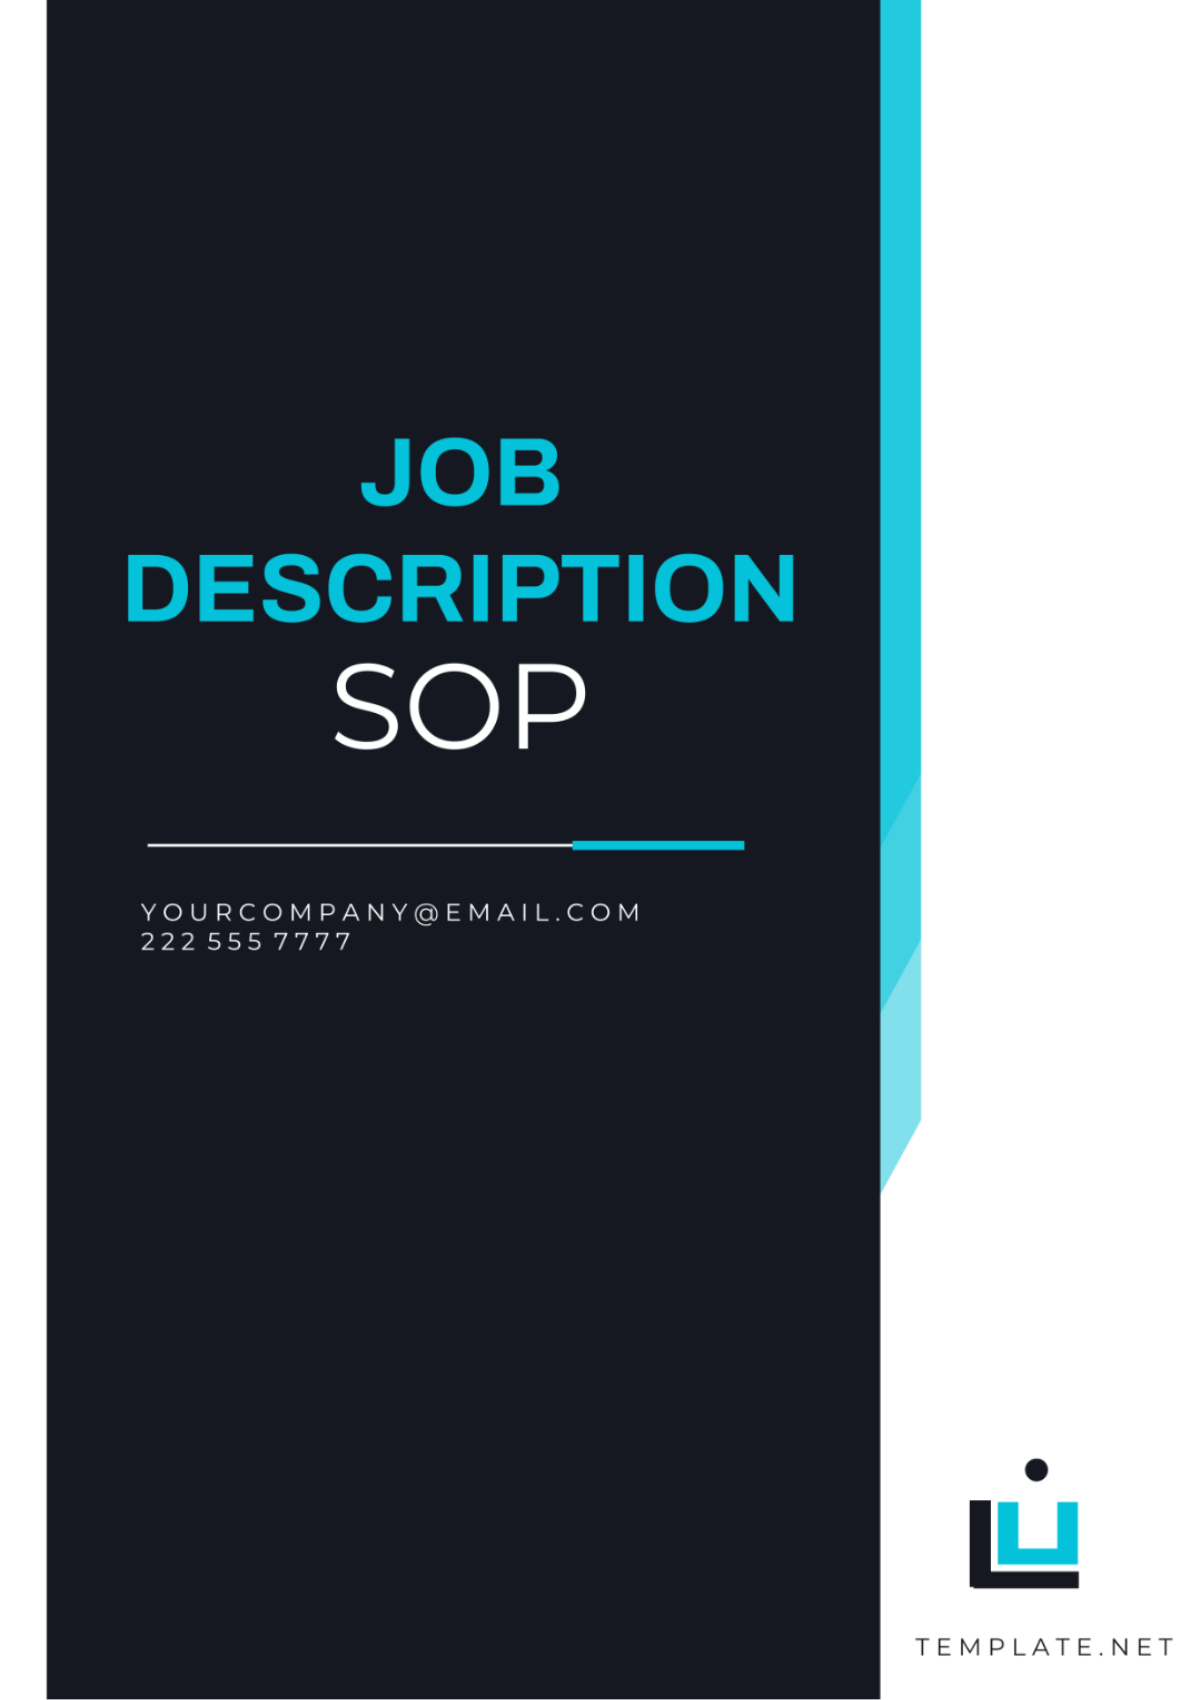 Job Description SOP Template